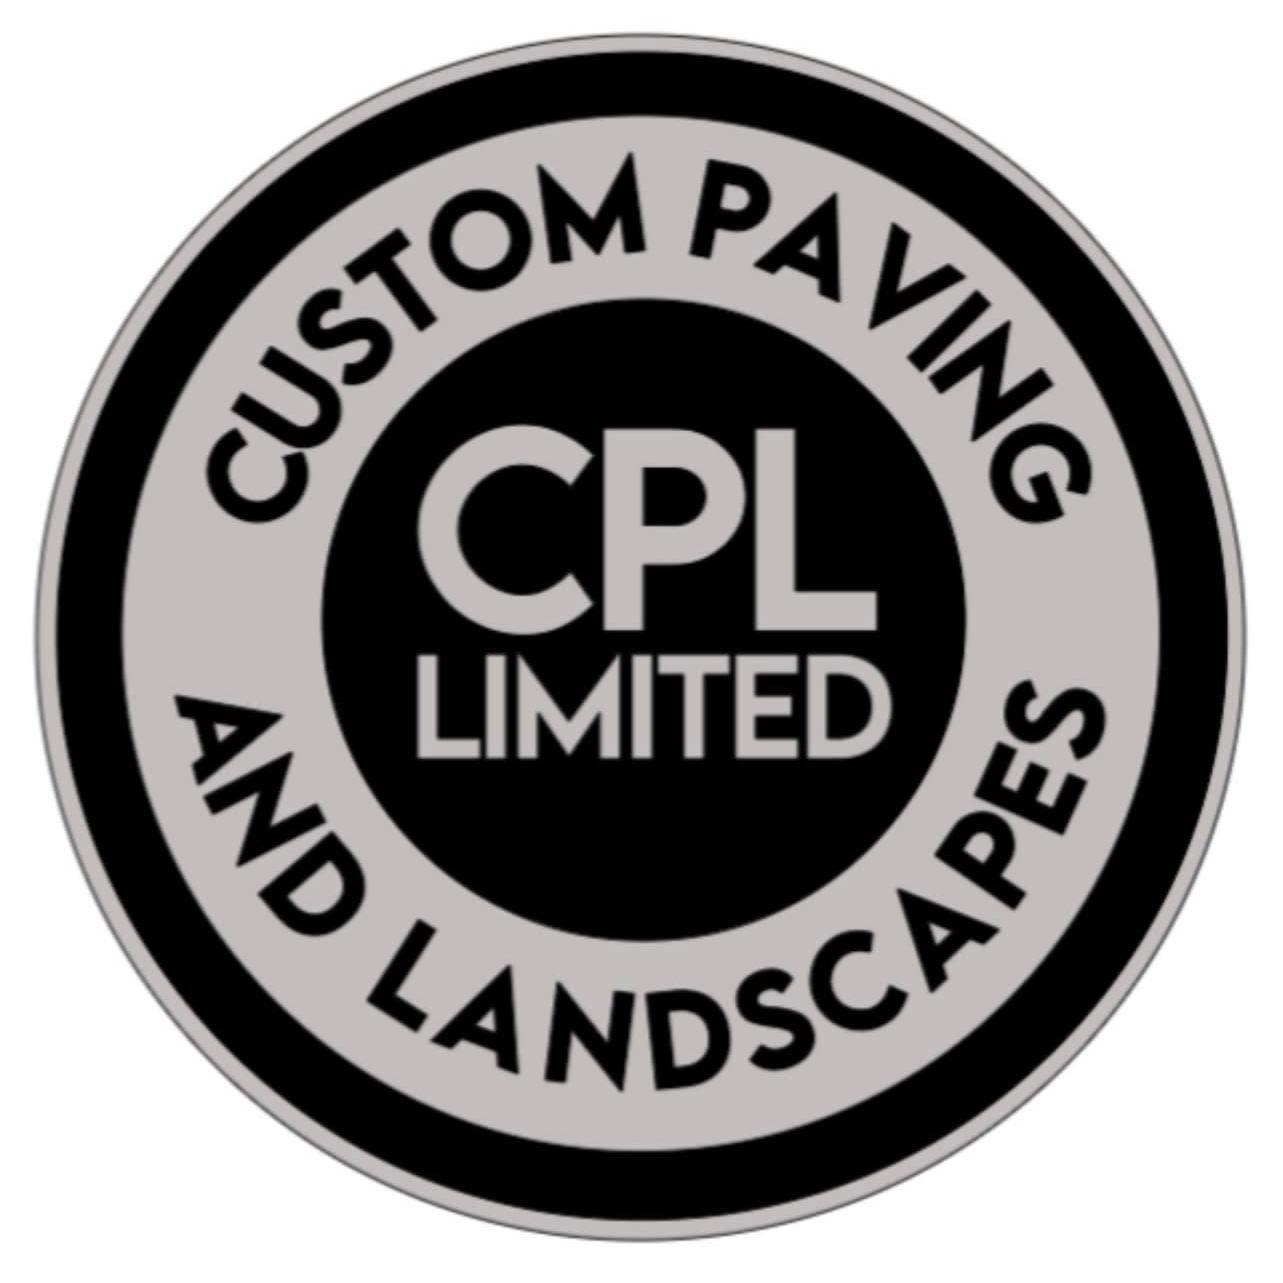 Custom Paving and Landscapes Limted - Ashington, Northumberland NE63 0YG - 07759 902752 | ShowMeLocal.com